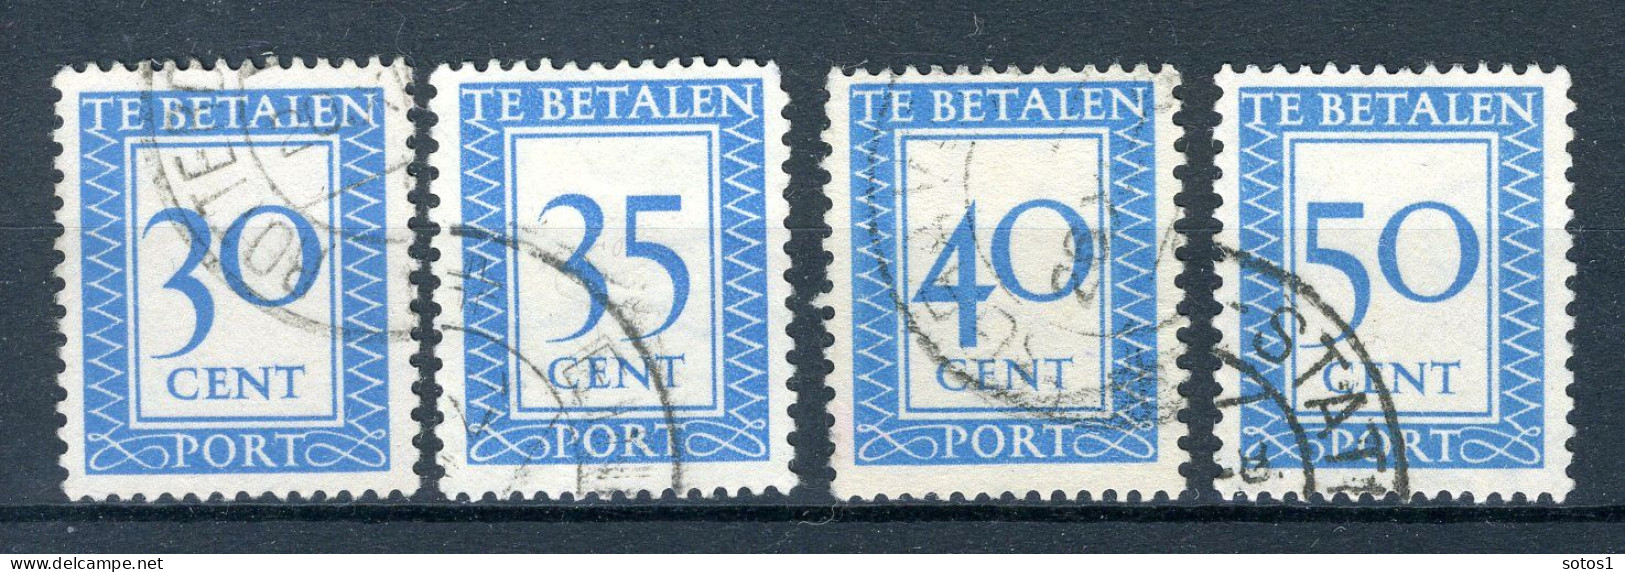 NEDERLAND P97/100 Gestempeld 1947-1958 - Cijfer En Waarde In Rechthoek - Postage Due